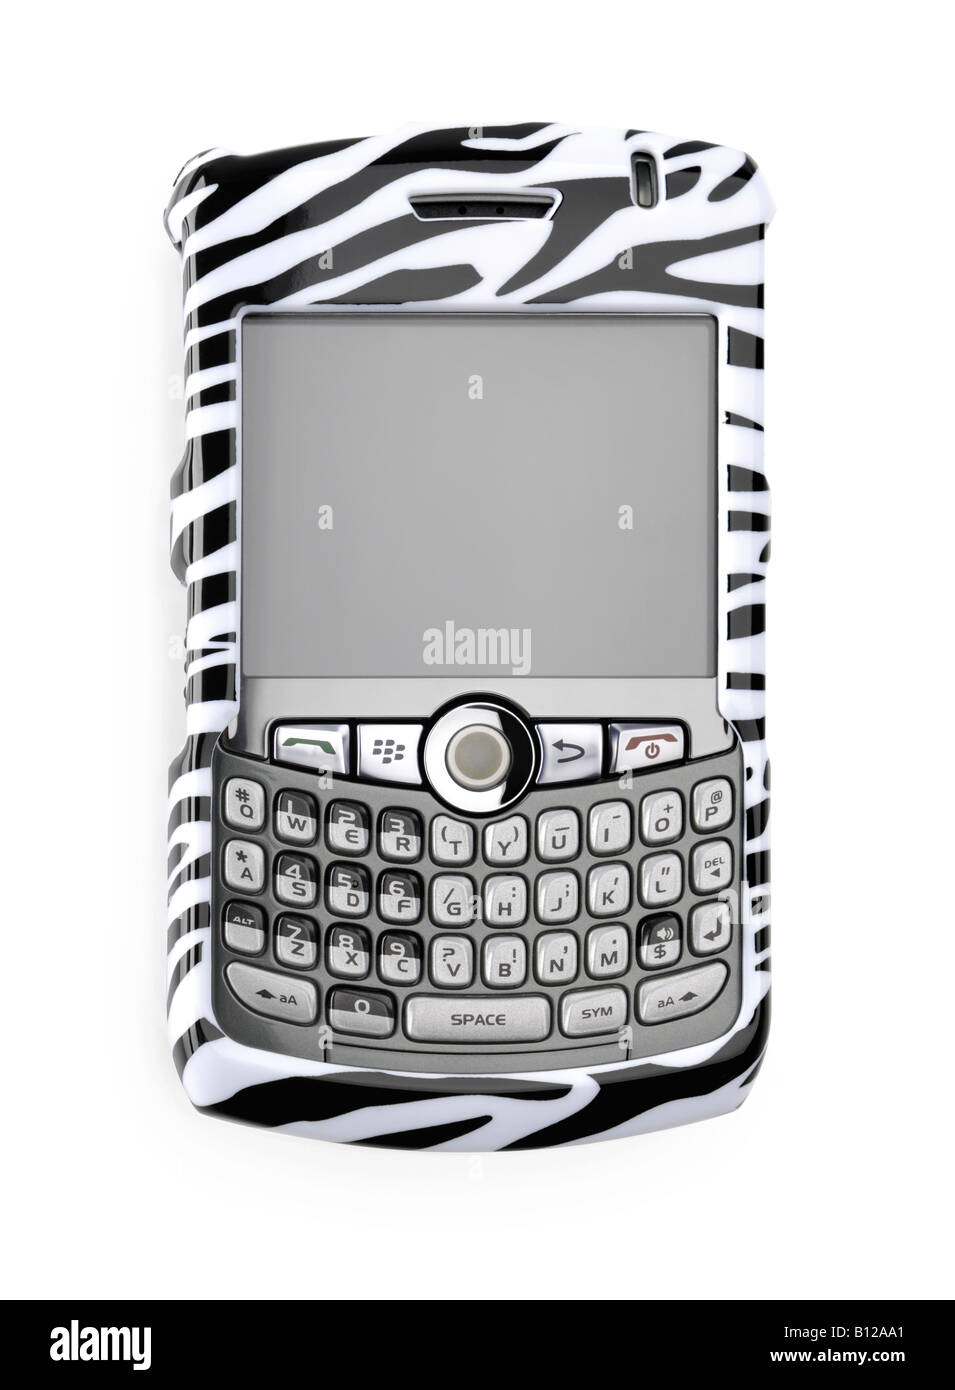 Fancy BlackBerry Smartphone in zebra cover Stock Photo